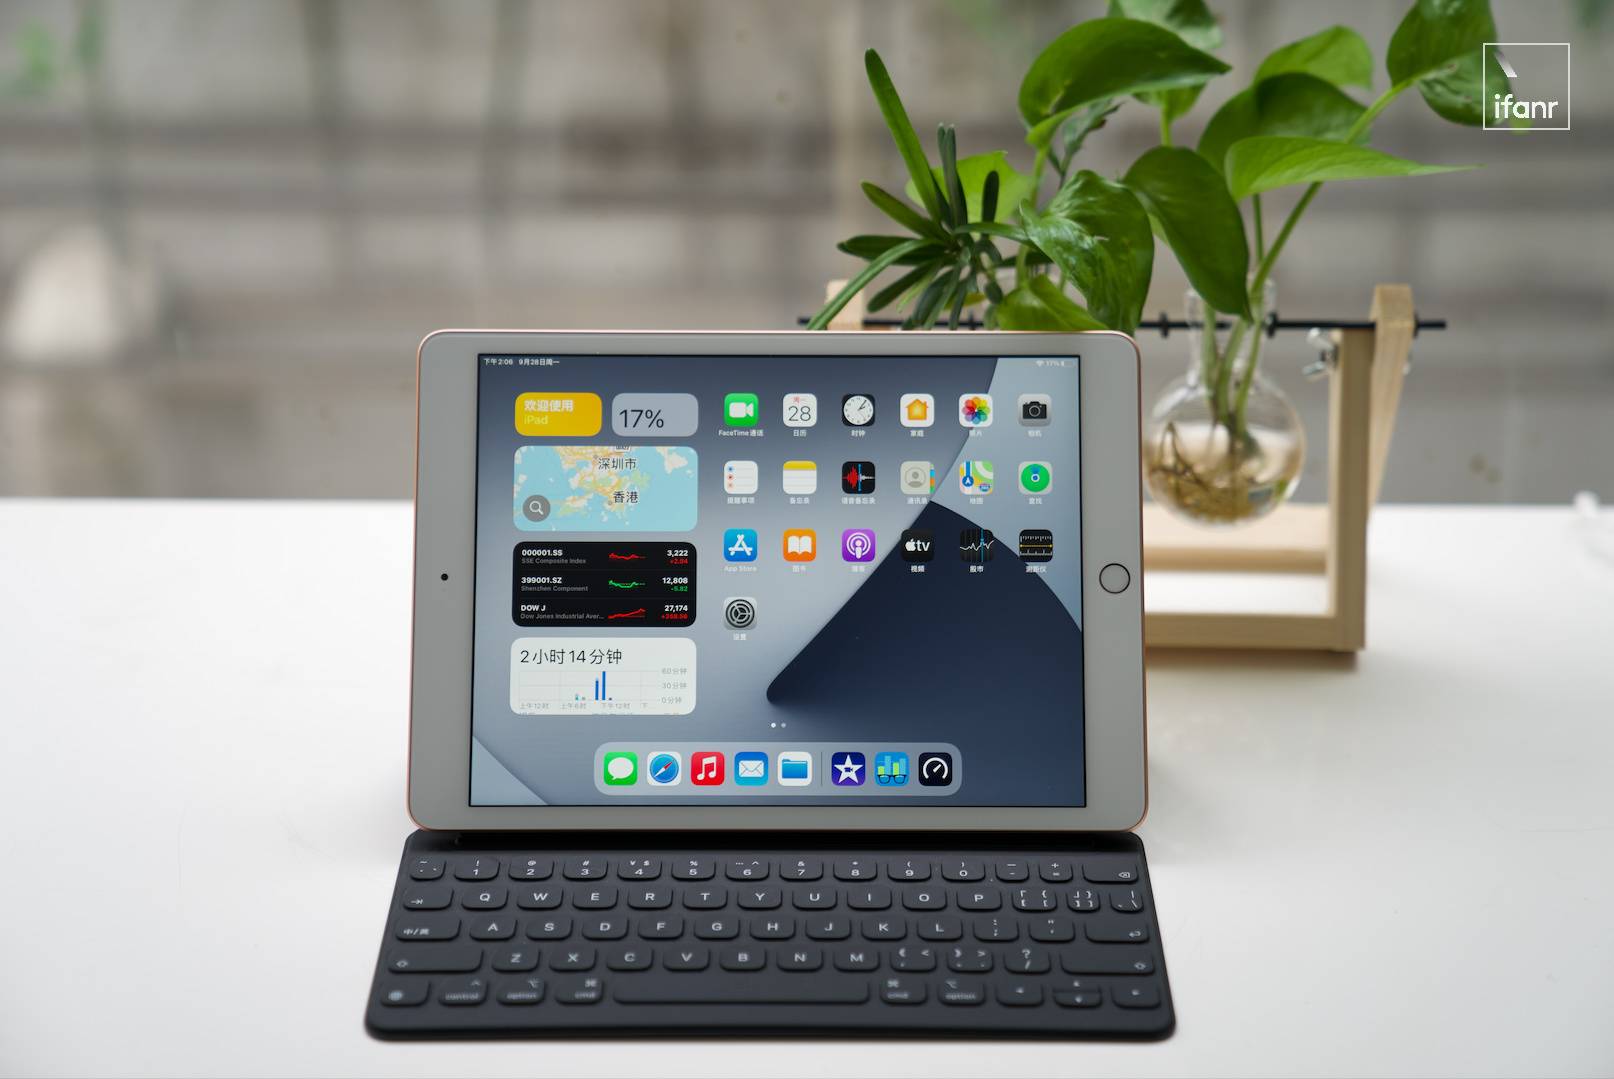 abwm - Recensione iPad 8: anche il valore è eccezionale, potrebbe essere la prima scelta per tablet per 3000 yuan